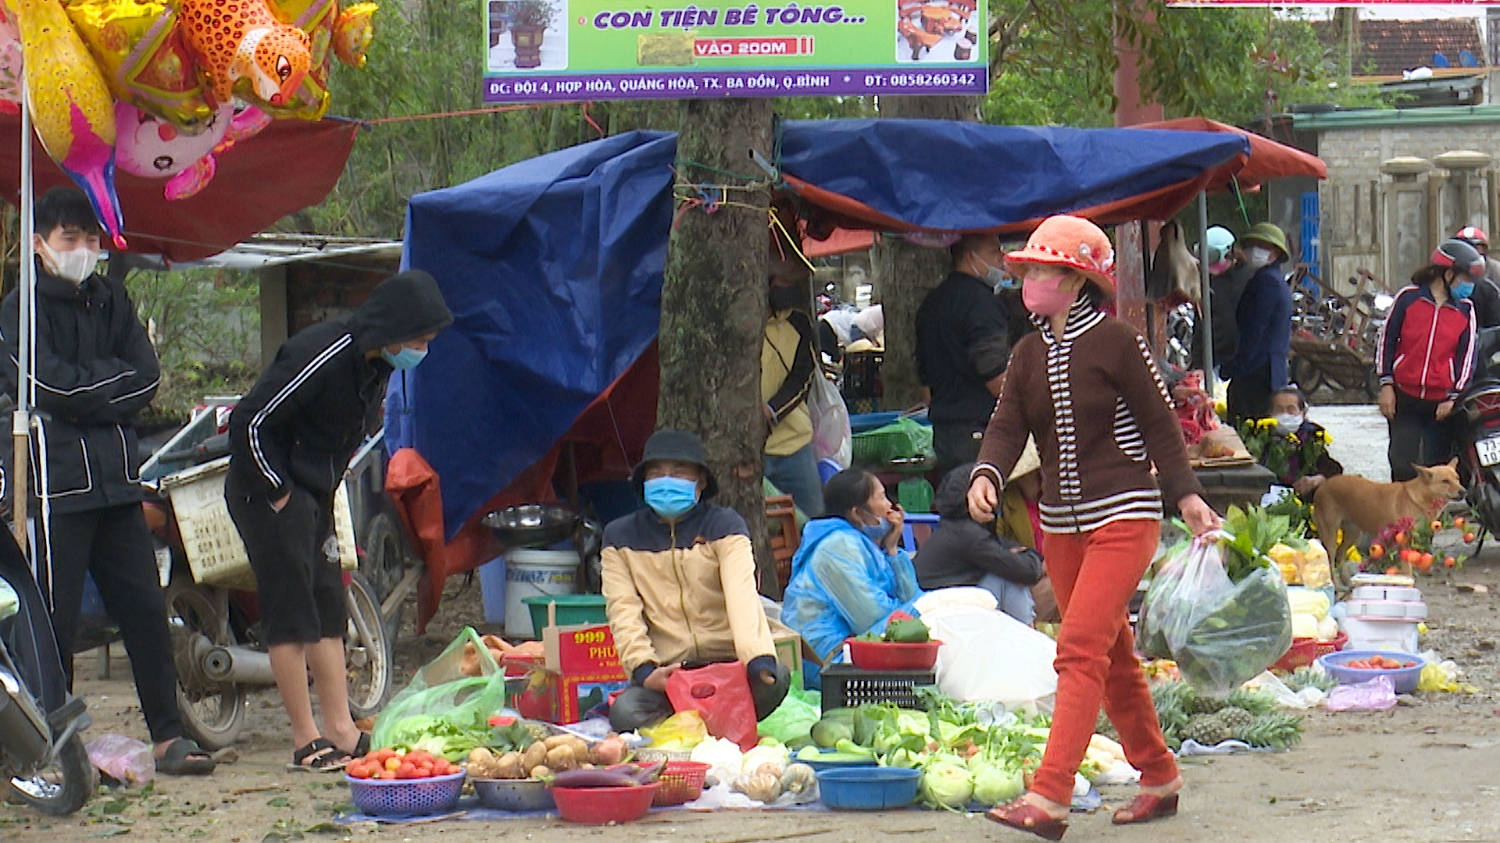 Người dân xã Quảng Hoà chấp hành nghiêm quy định đeo khẩu trang và giữ gìn vệ sinh nơi công cộng